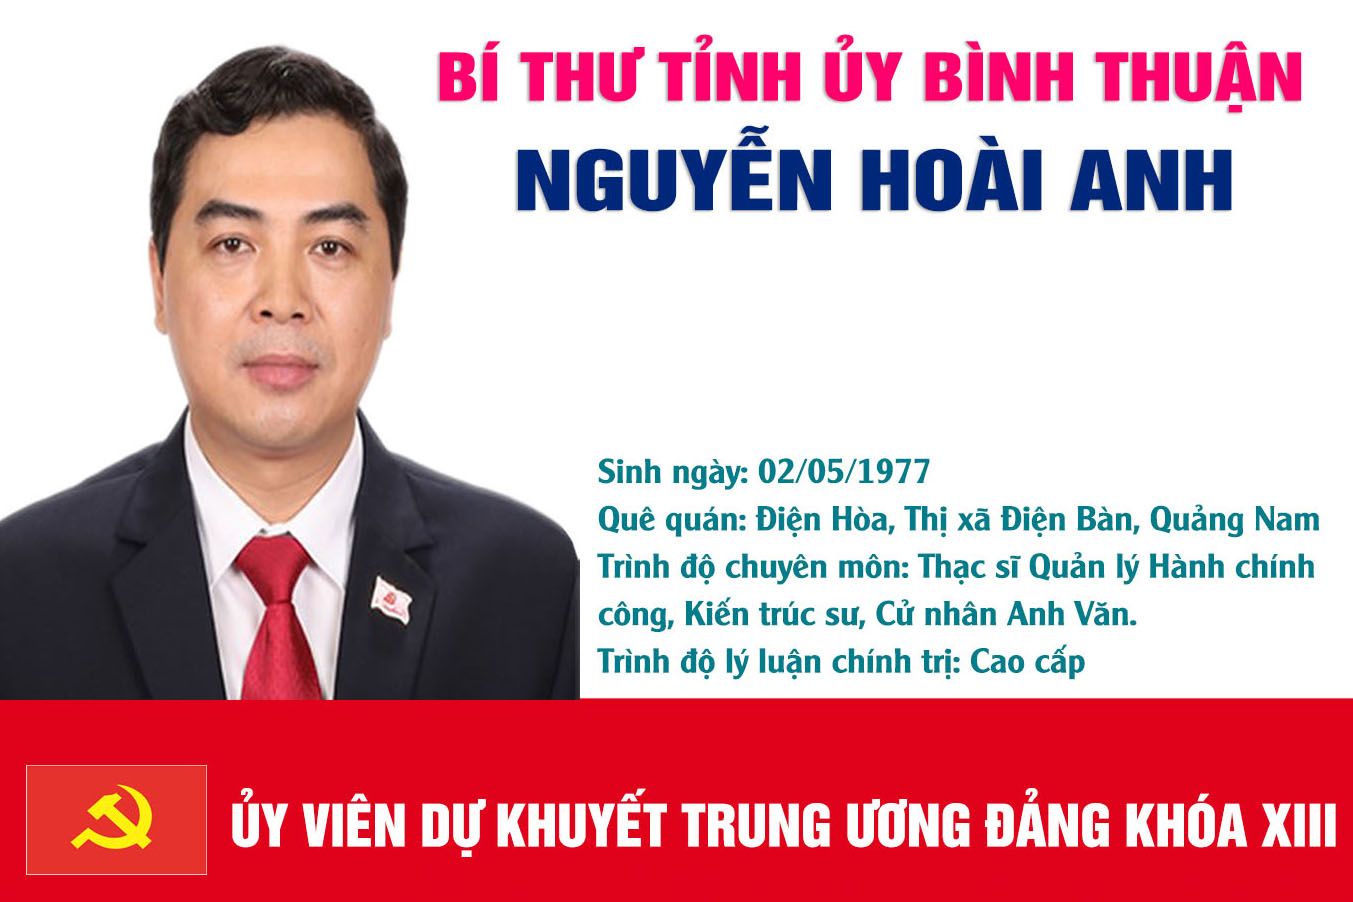 Infographic: Chân dung Bí thư Tỉnh ủy Bình Thuận Nguyễn Hoài Anh 